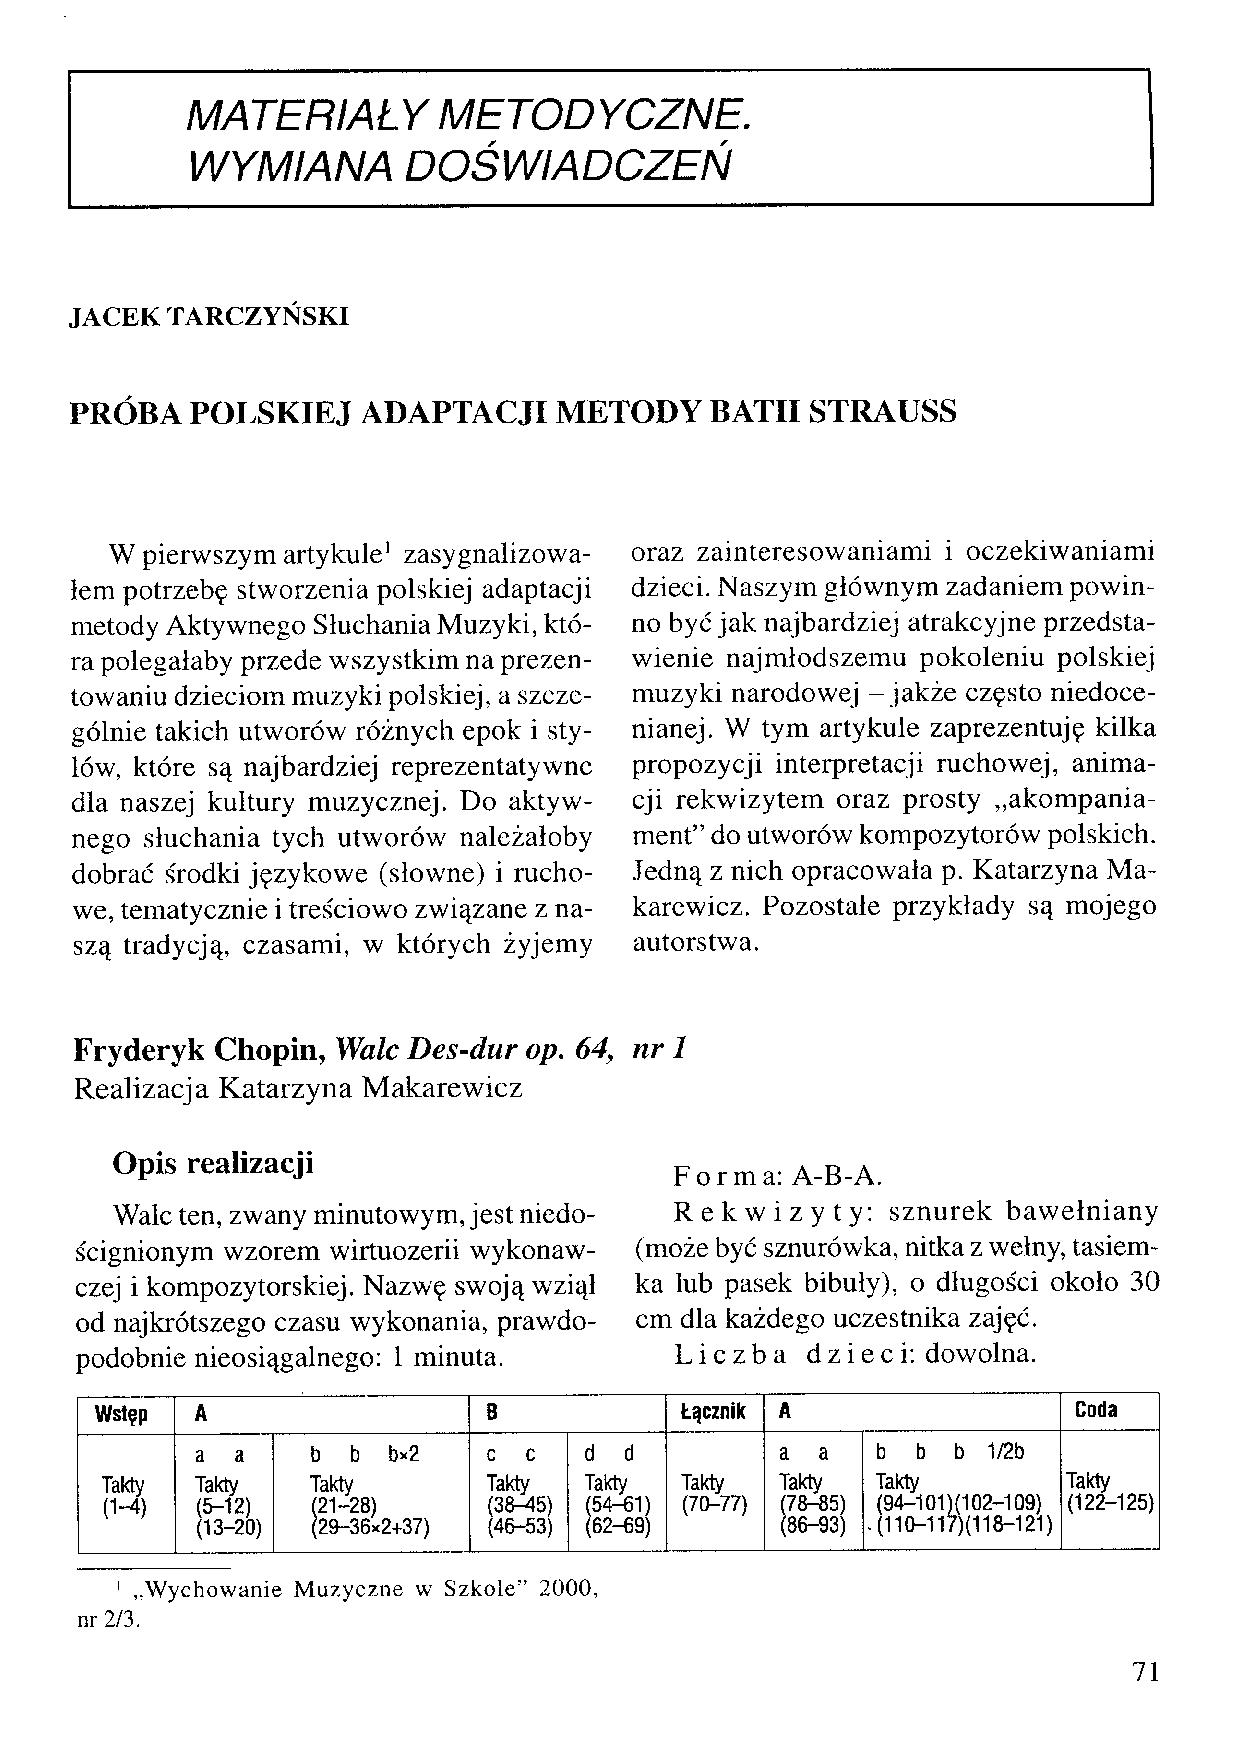 Próba polskiej adaptacji metody Batii Strauss